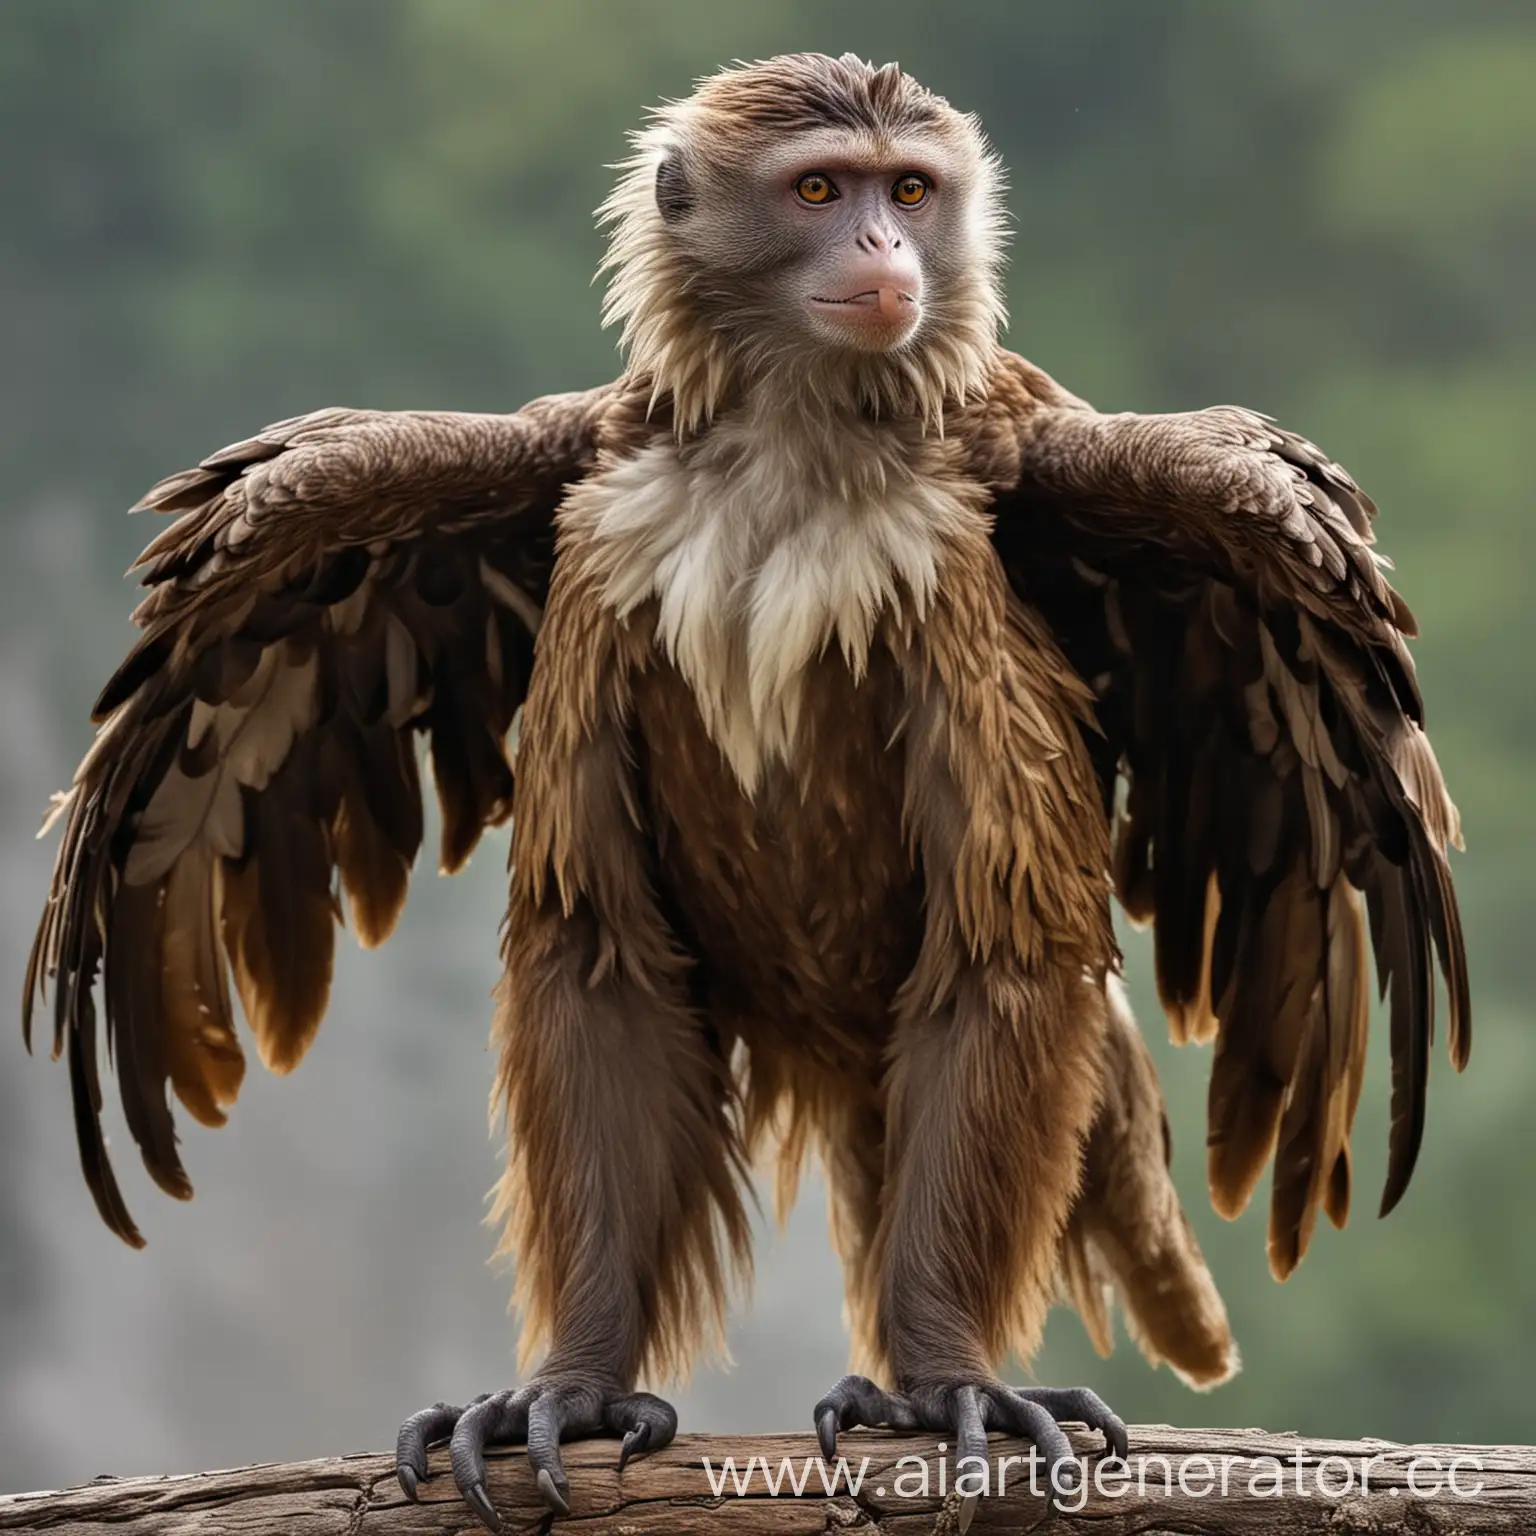 Hybrid of monkey and eagle